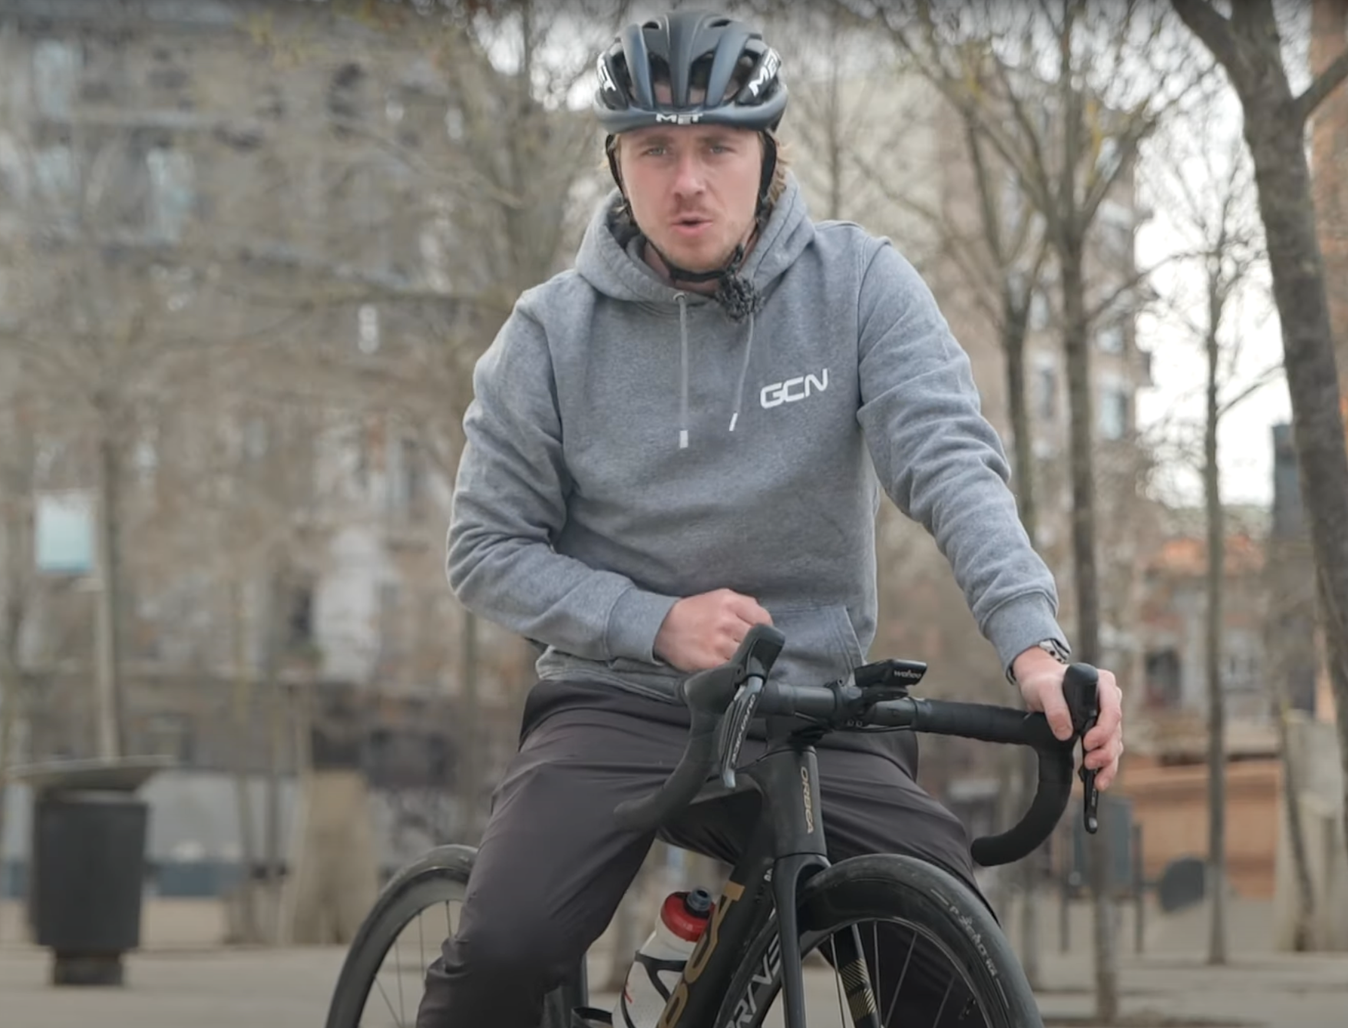 Hank wearing a GCN hoodie on an Orbea bike